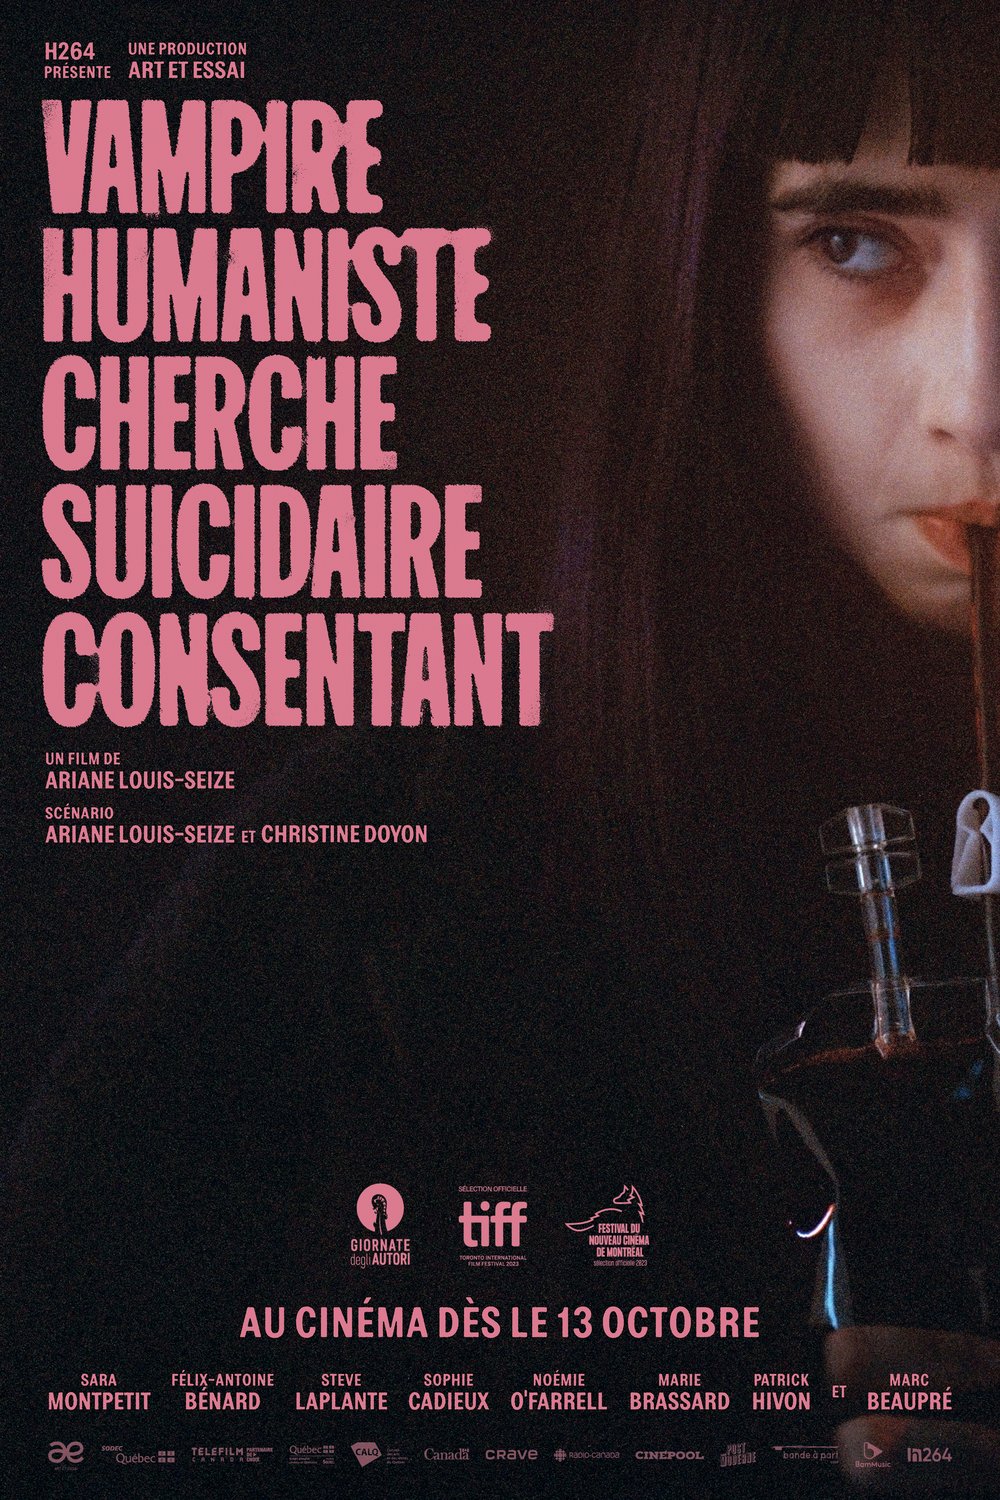 L'affiche du film Vampire humaniste cherche suicidaire consentant